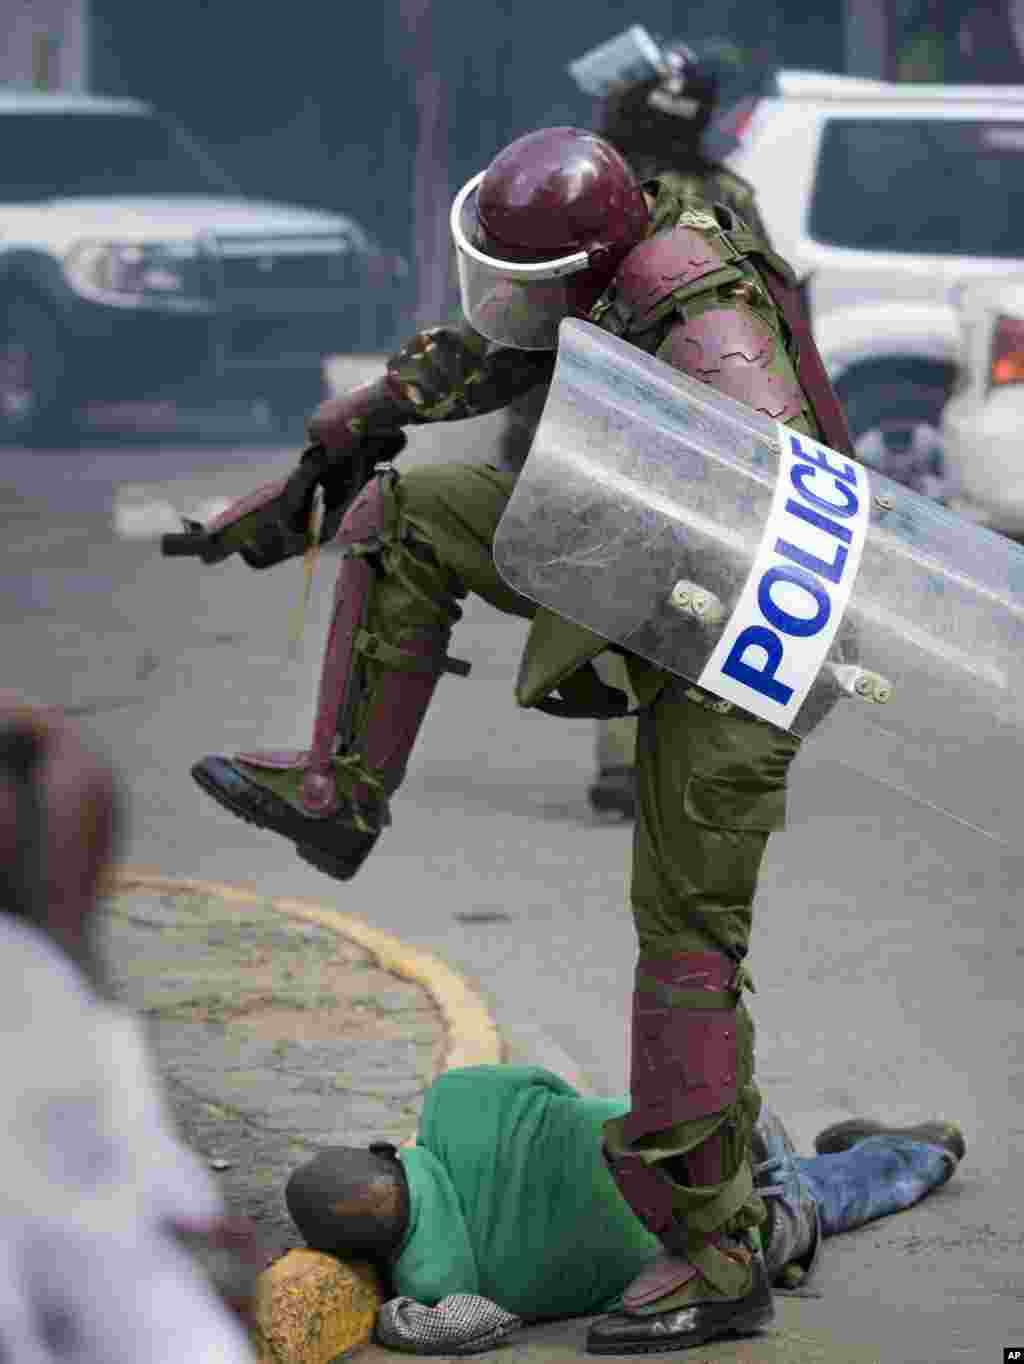 پلیس کنیایی یکی از معترضان را کتک می زند. این معترضان خواستار مبارزه با فساد هستند و در نایروبی تجمع کردند.